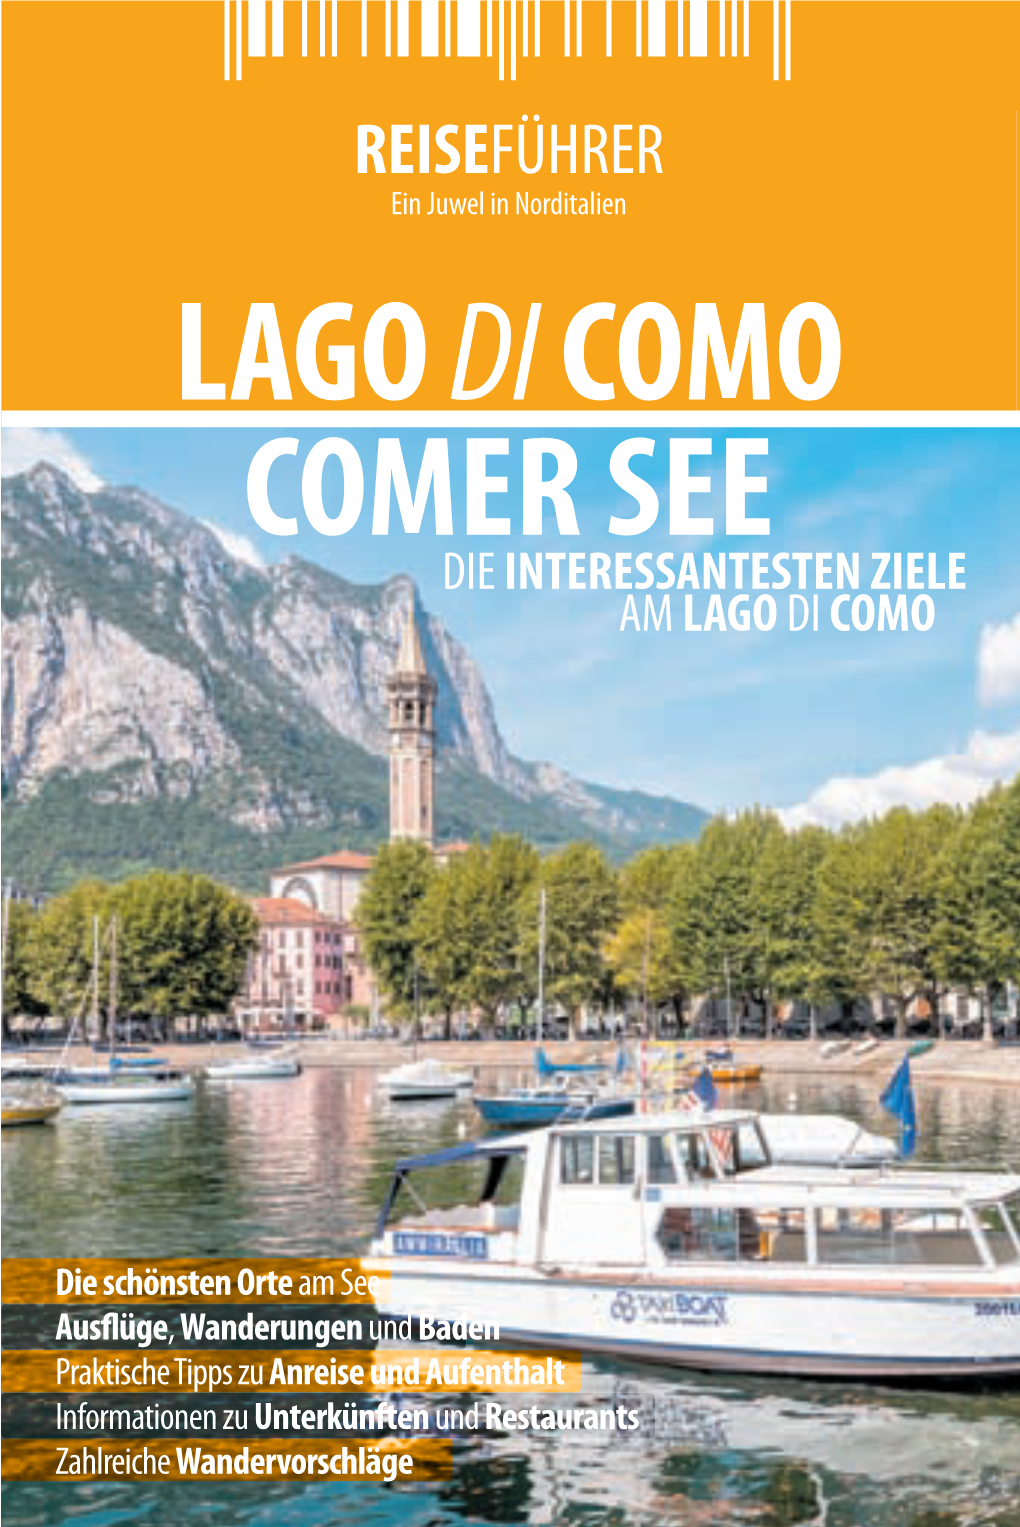 Comer See Lago Di Como